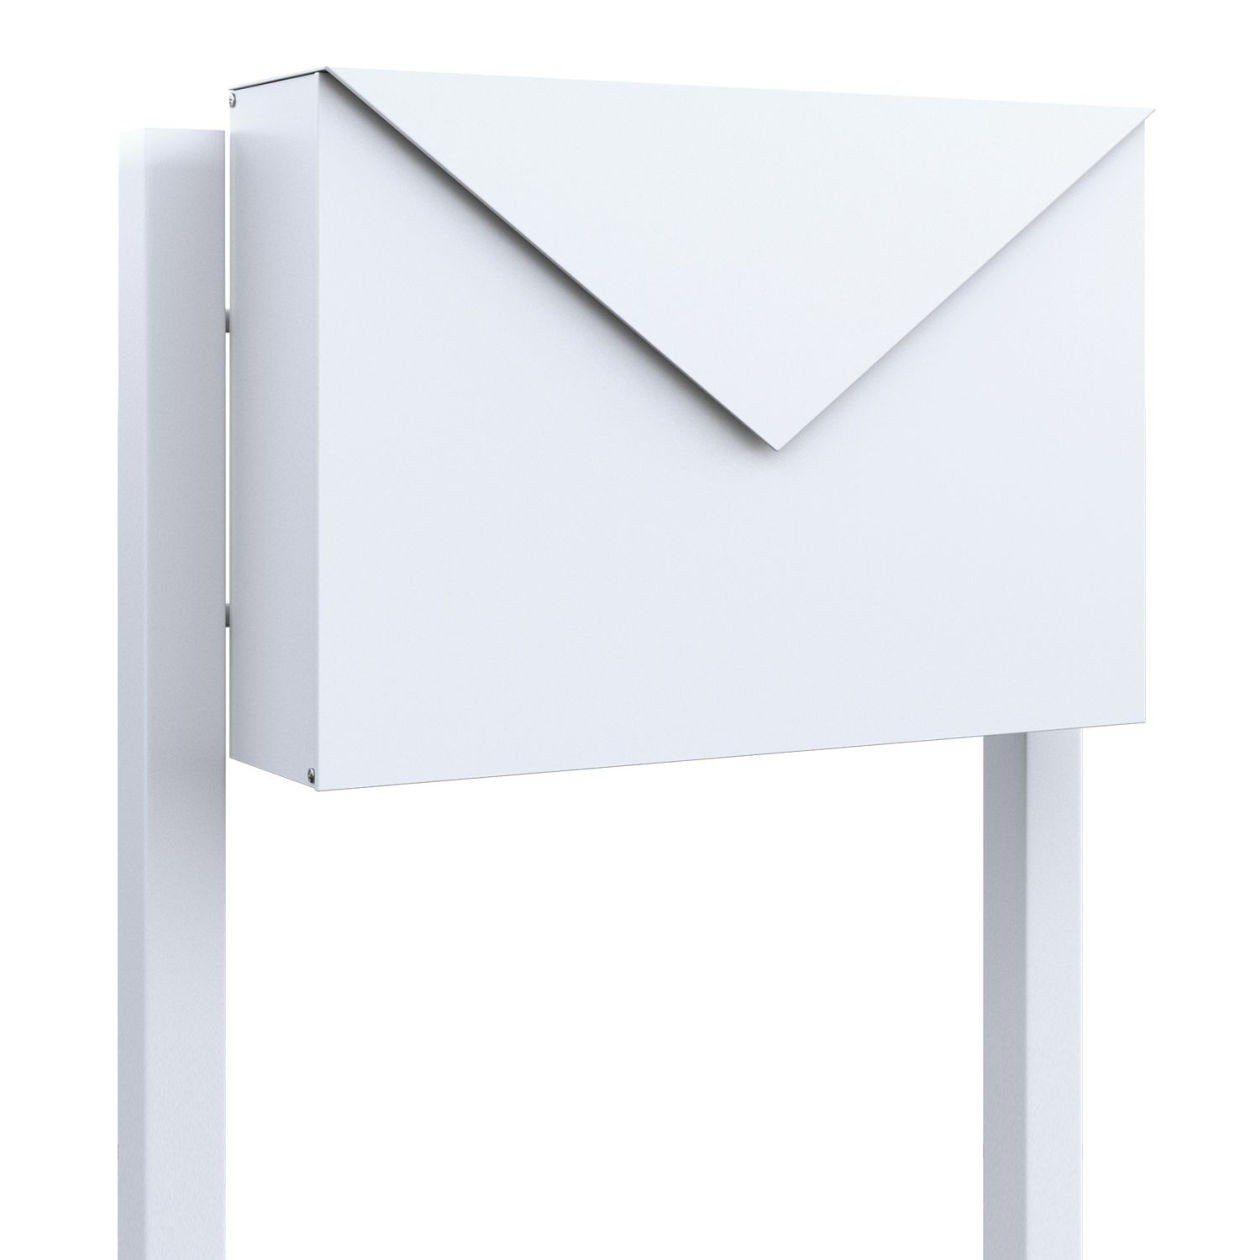 Bravios Briefkasten Standbriefkasten Letter Weiß